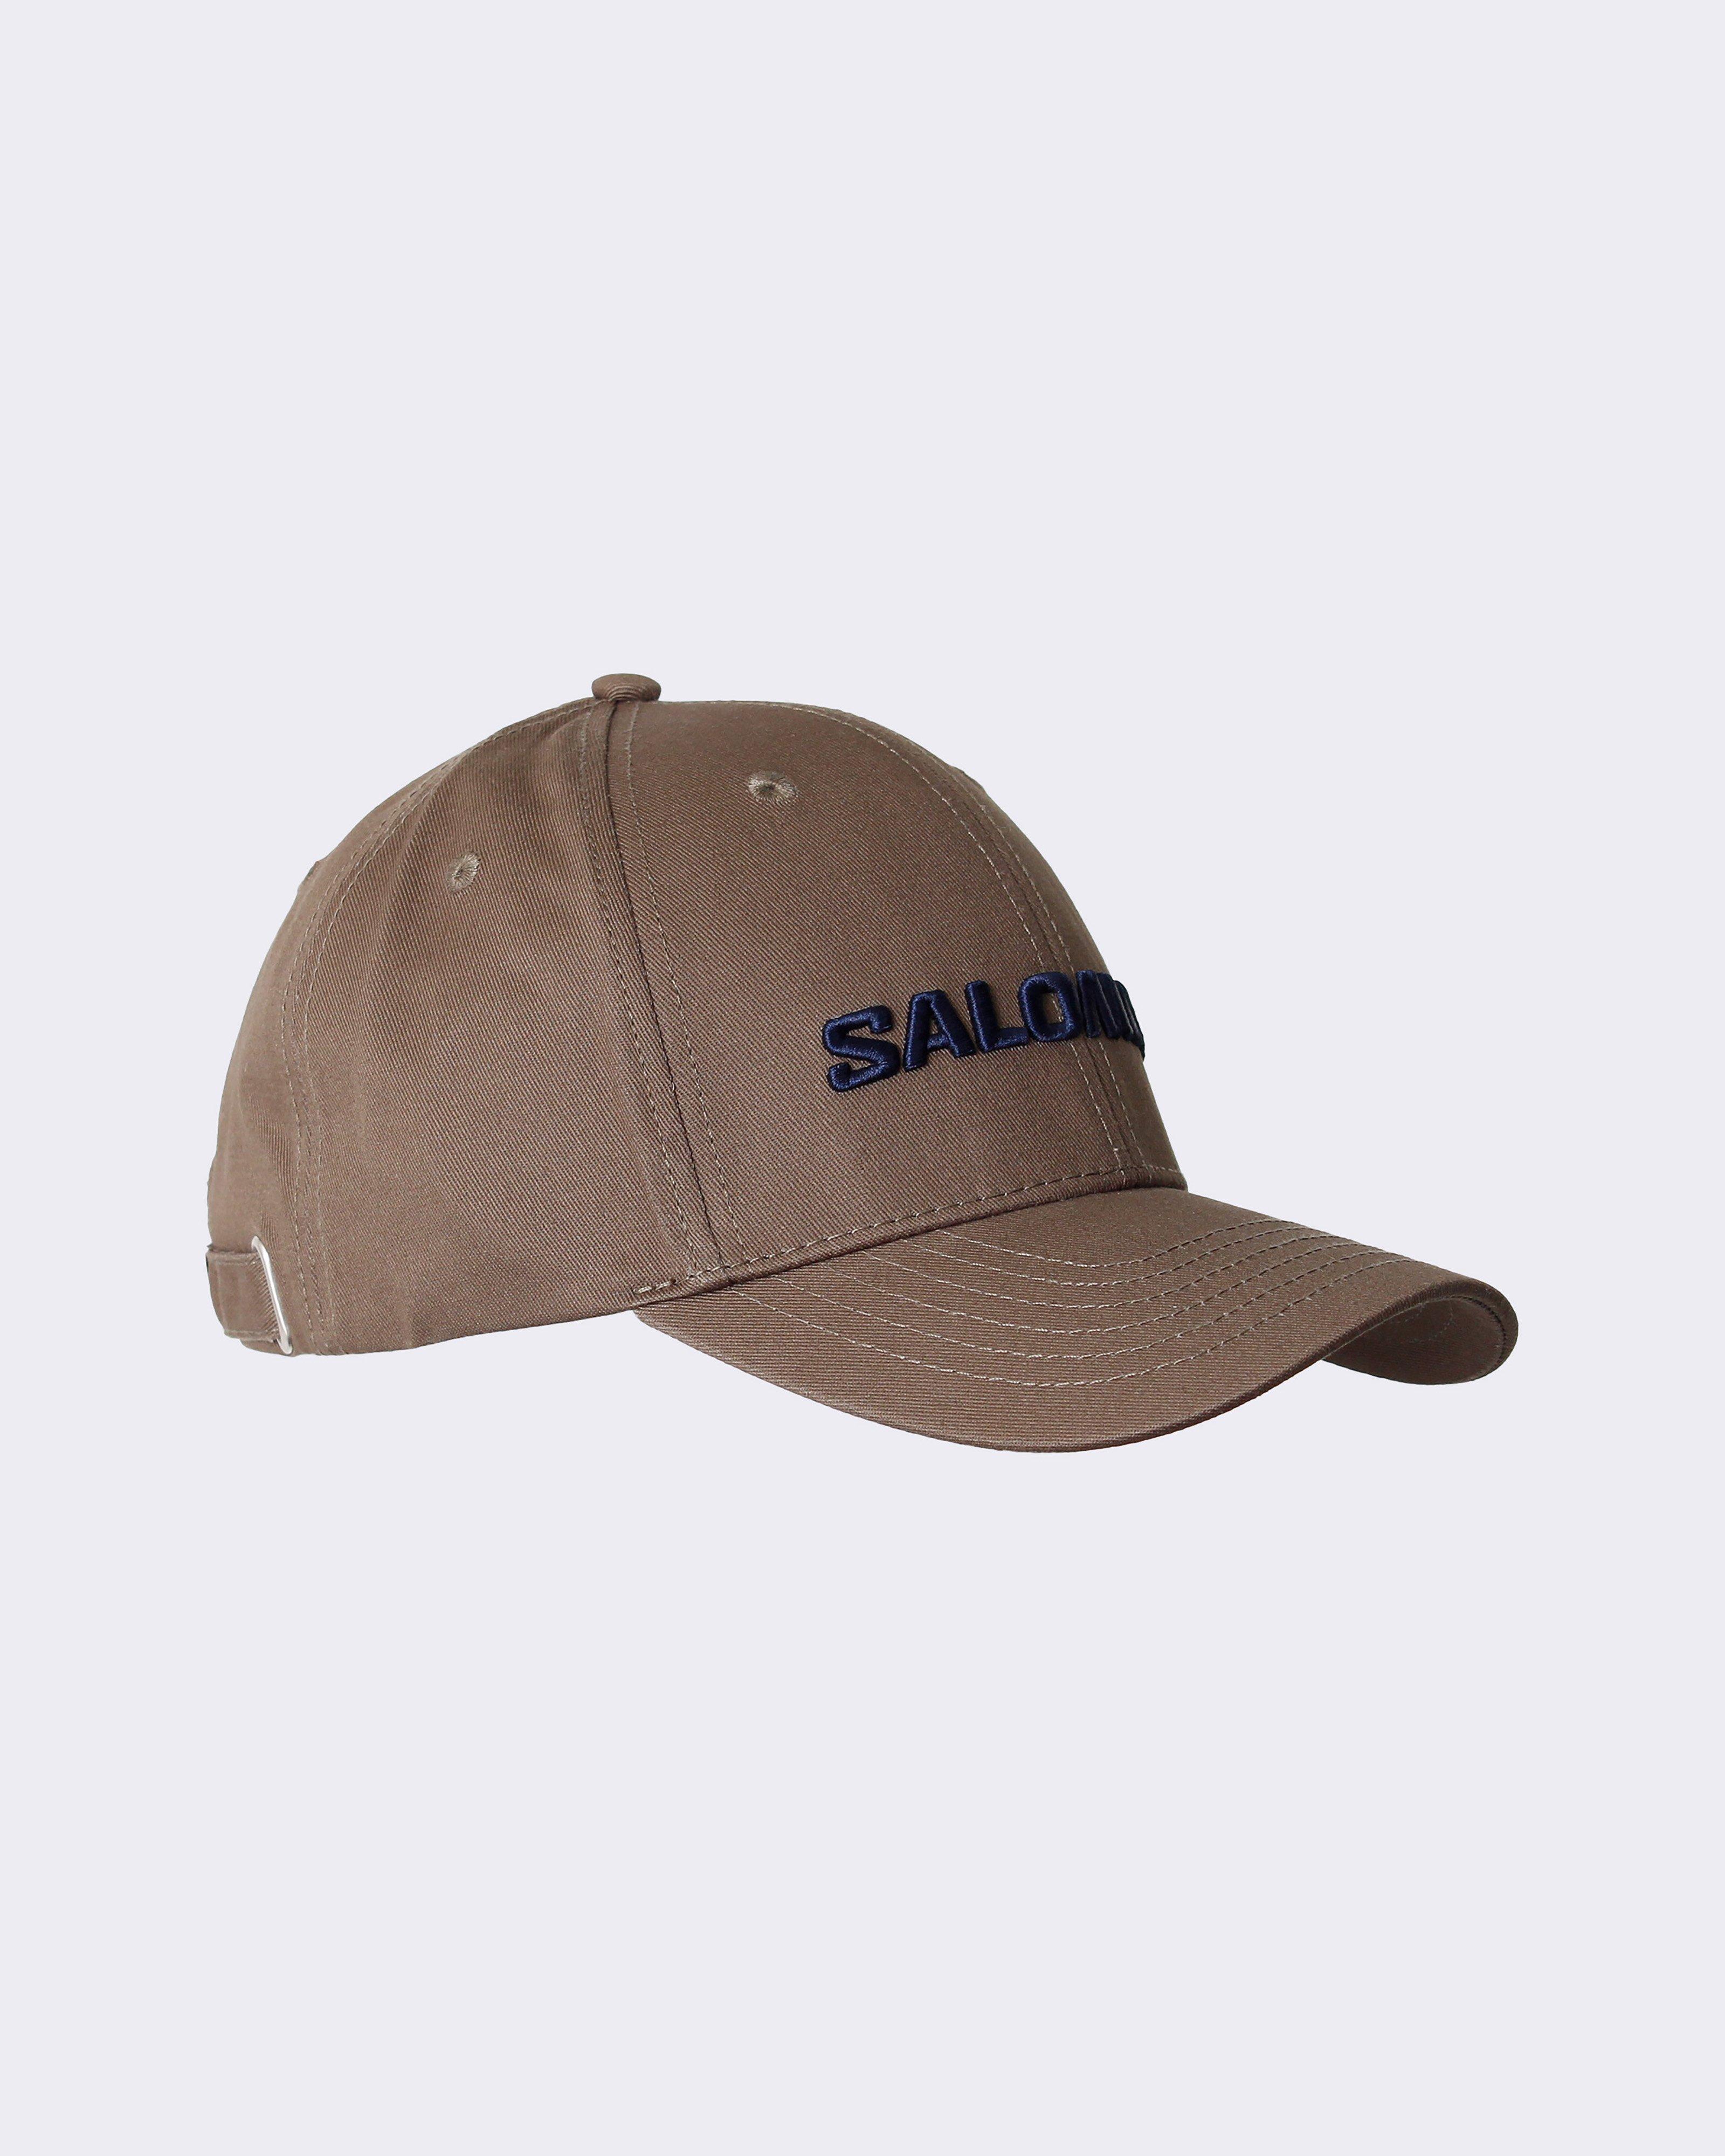 Salomon Adjustable Cap -  Fatigue